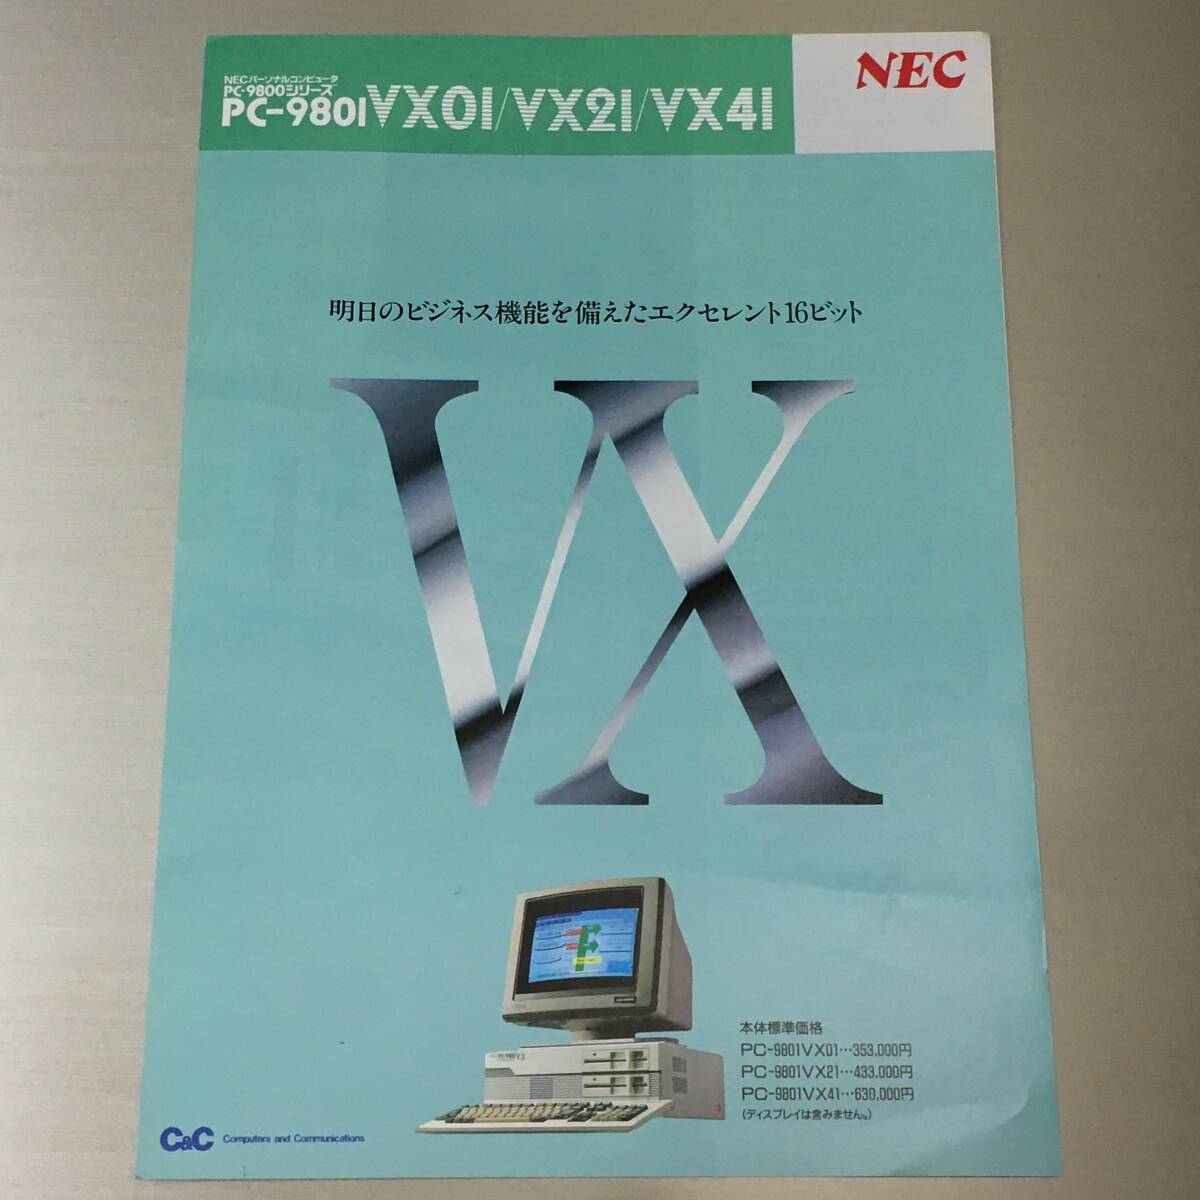 カタログ NEC PC-9801VX01/VX21/VX41 昭和63年5月_画像1